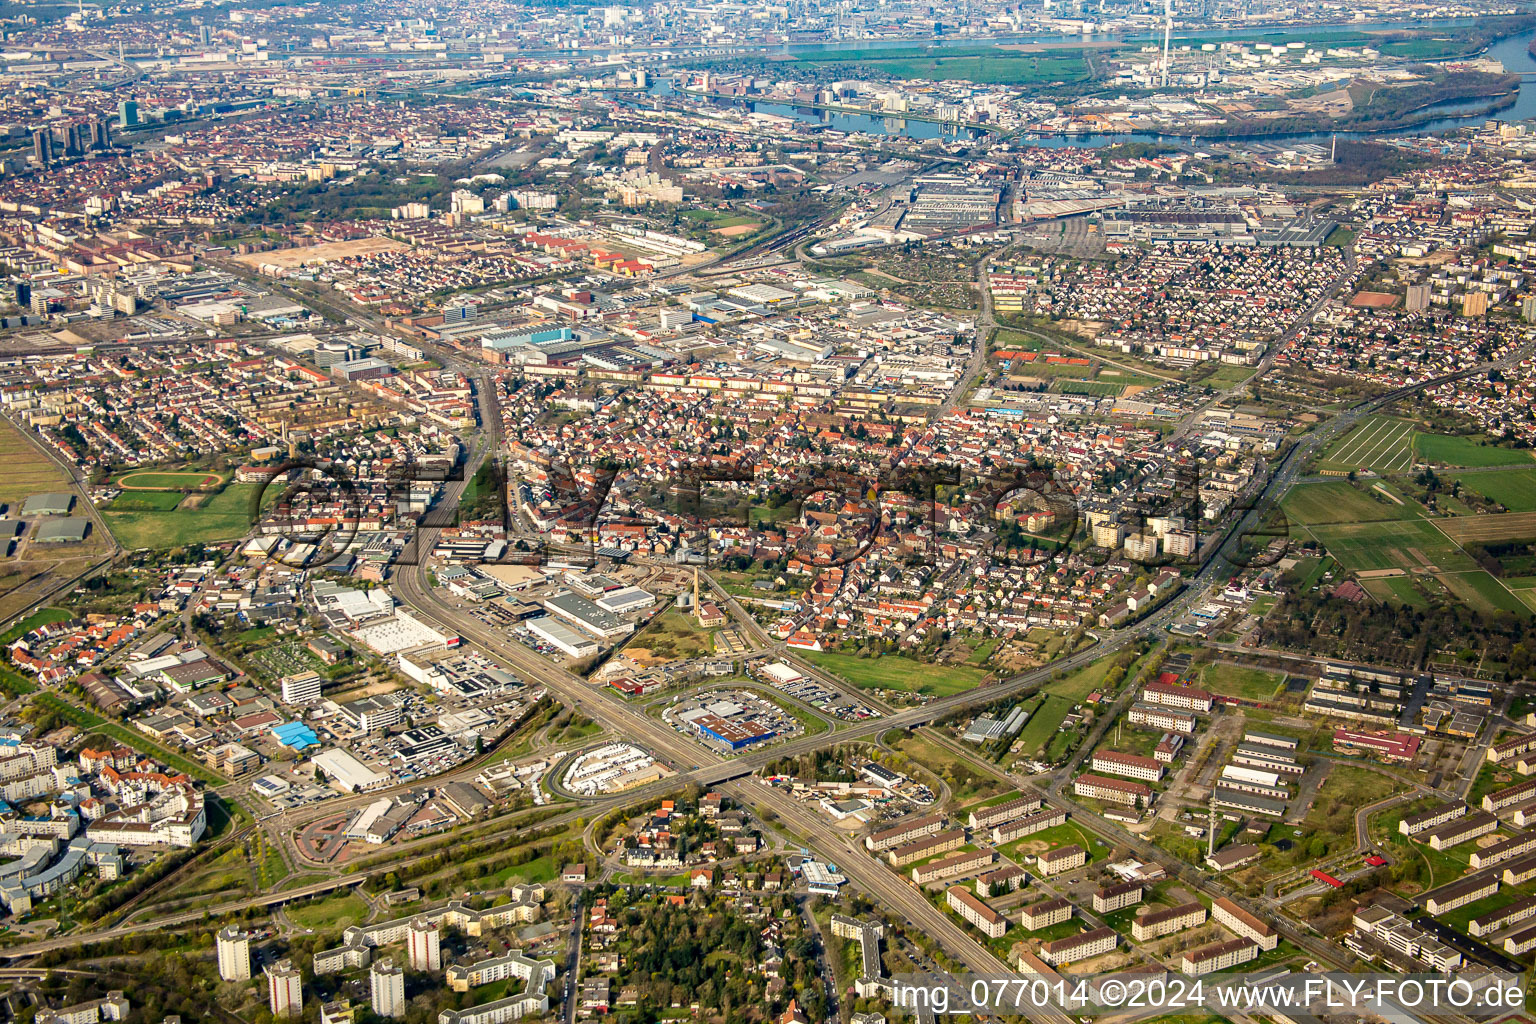 Photographie aérienne de Zone de peuplement à le quartier Käfertal in Mannheim dans le département Bade-Wurtemberg, Allemagne